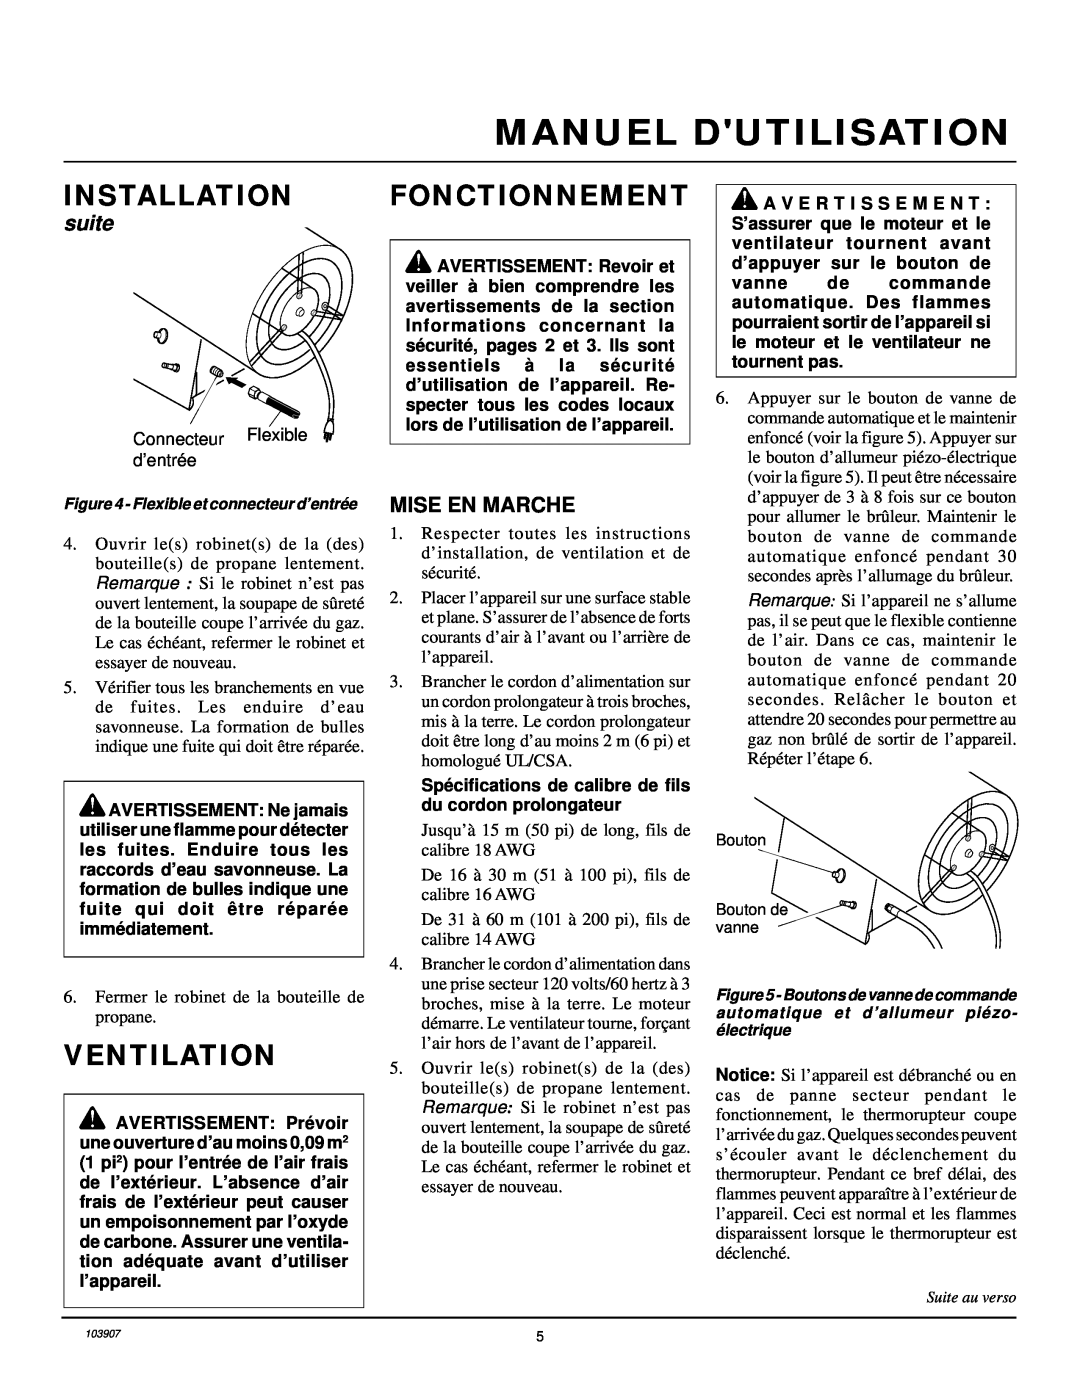 Desa RCLP35B owner manual Fonctionnement, Manuel Dutilisation, Installation, Ventilation, suite 